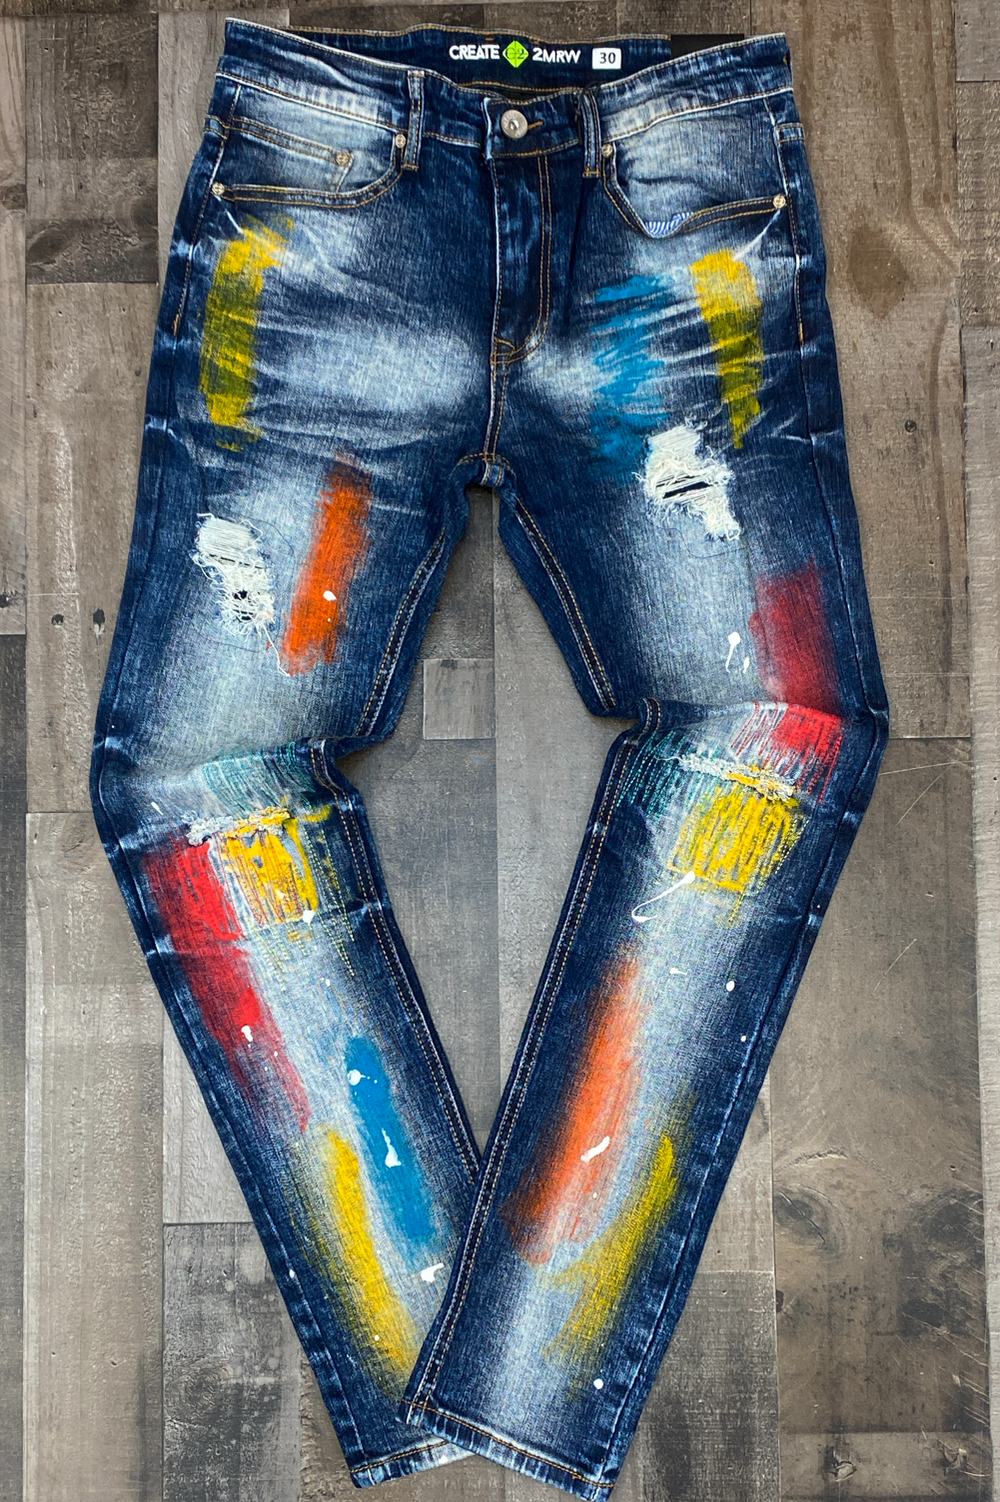 Create Tmrw- painted jeans